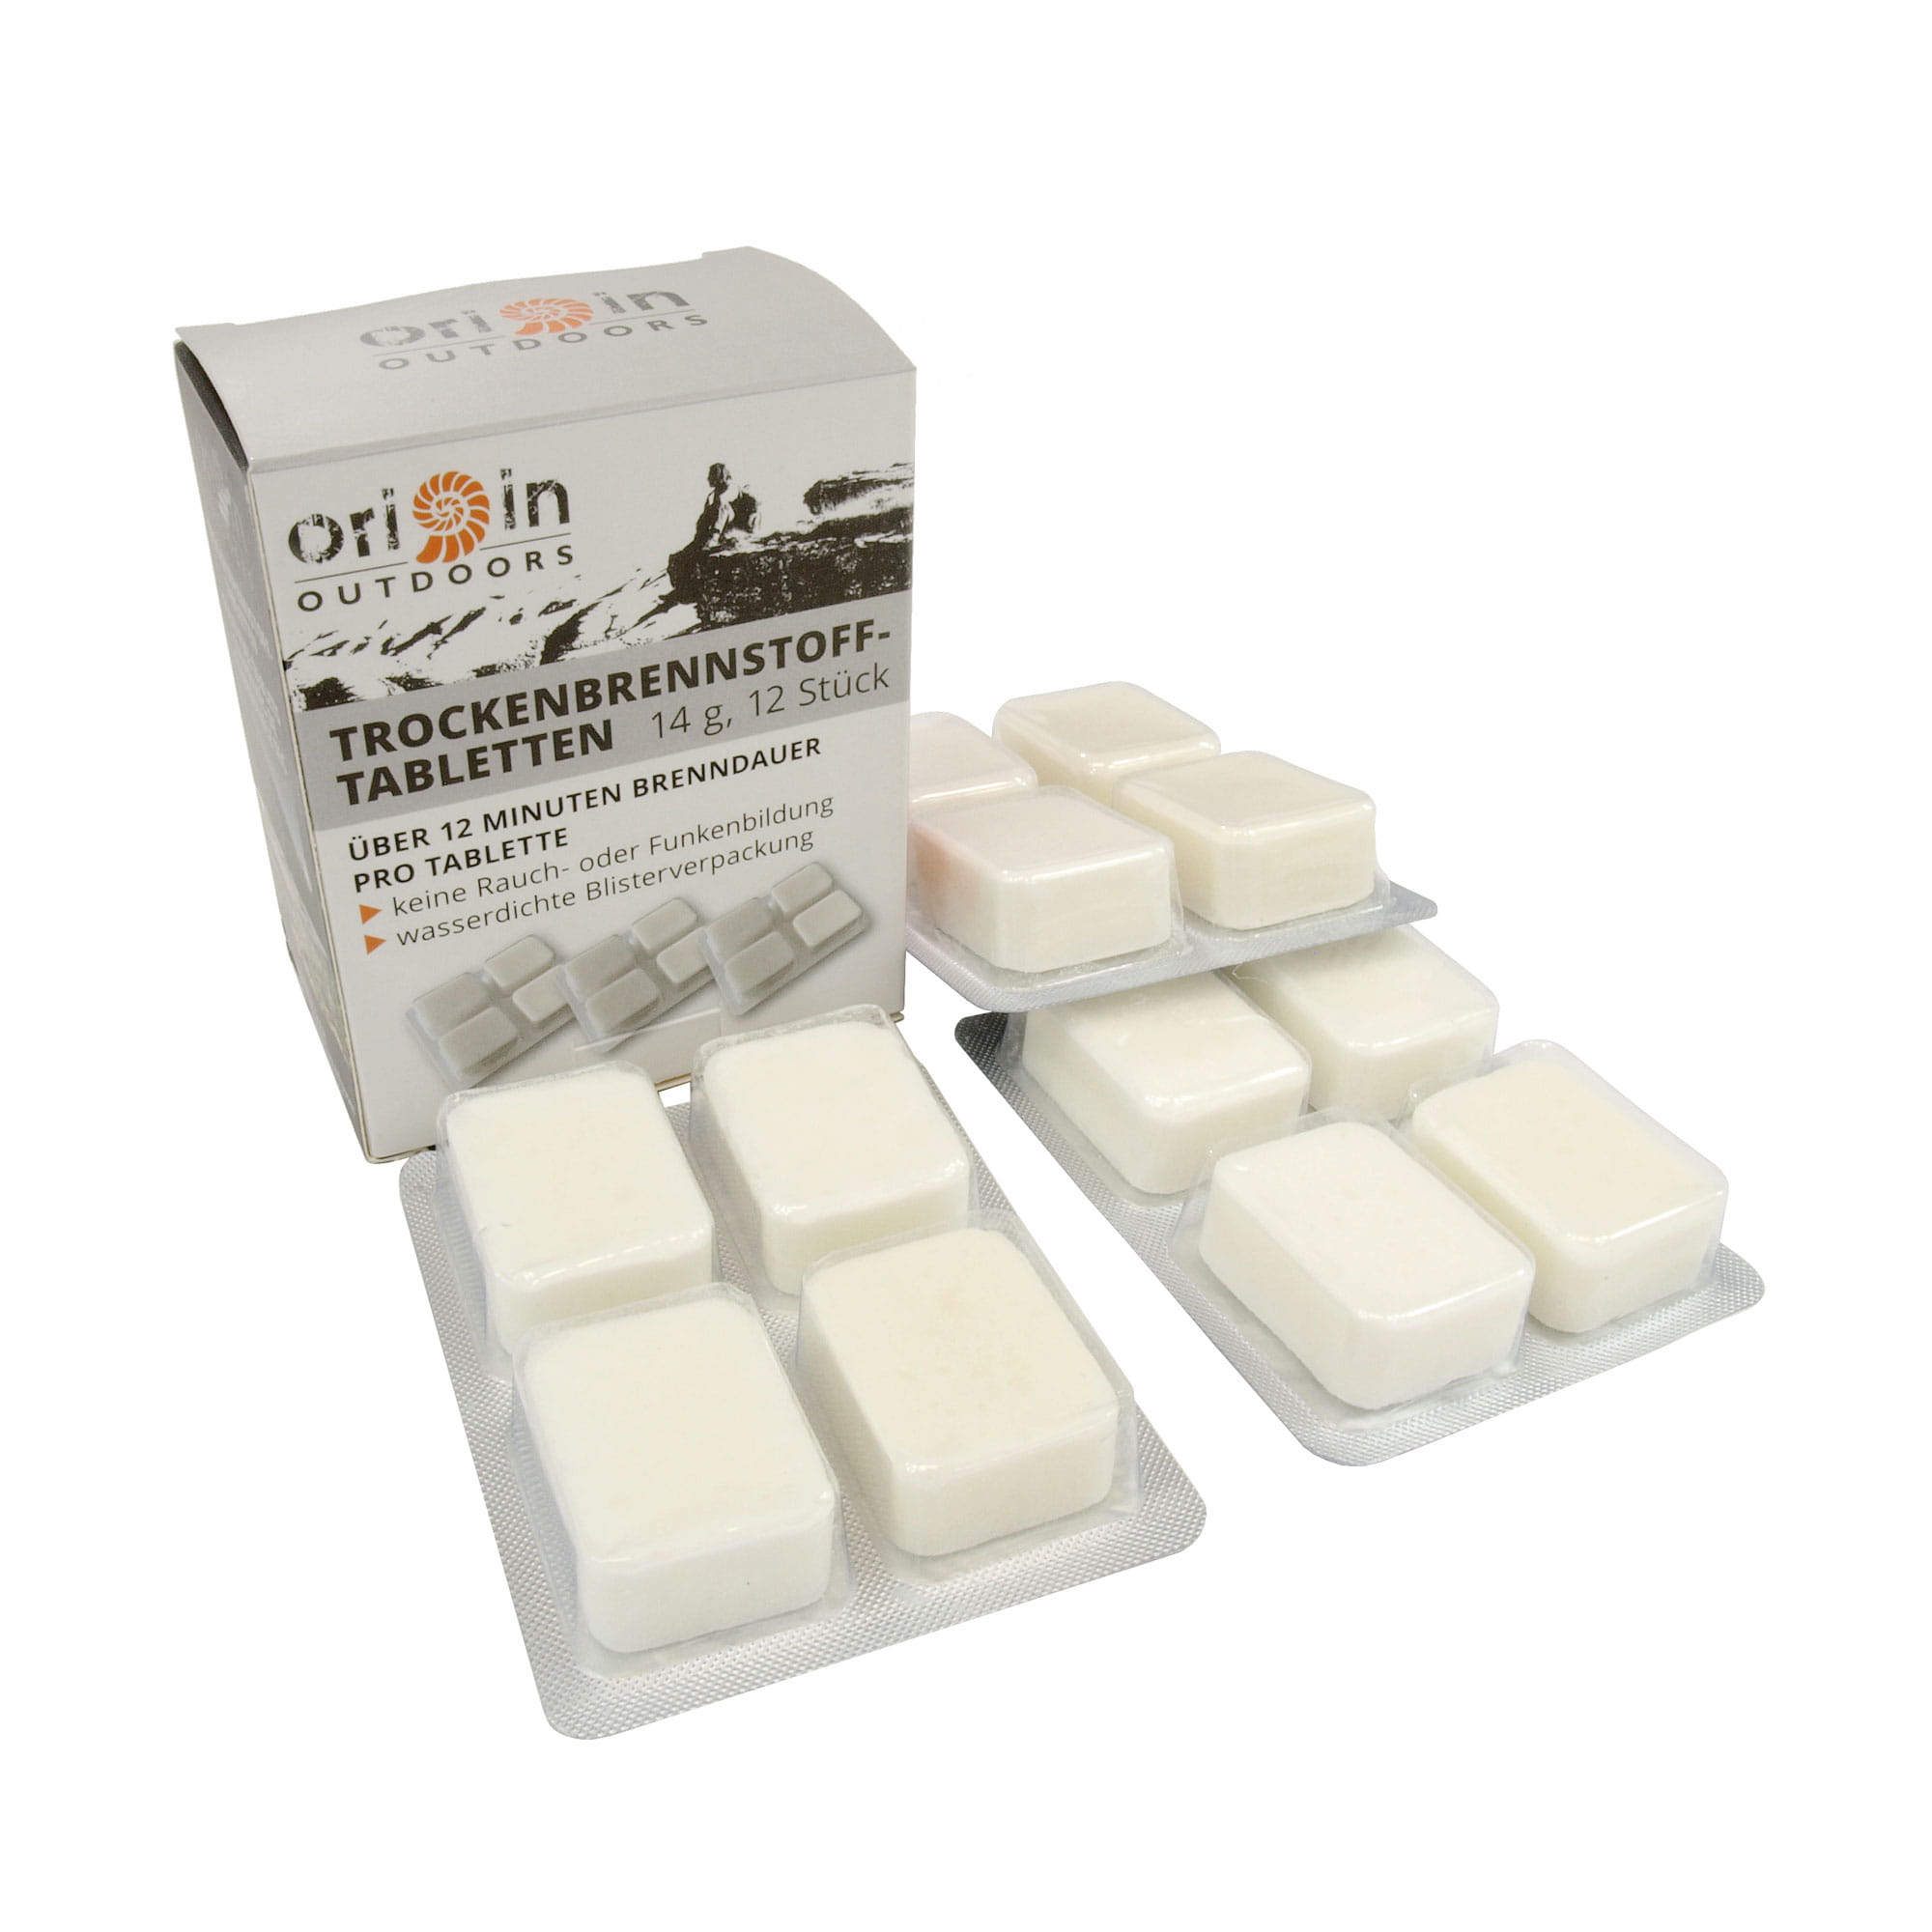 Origin Outdoors Trockenbrennstoff Tabletten 12 x 14 g